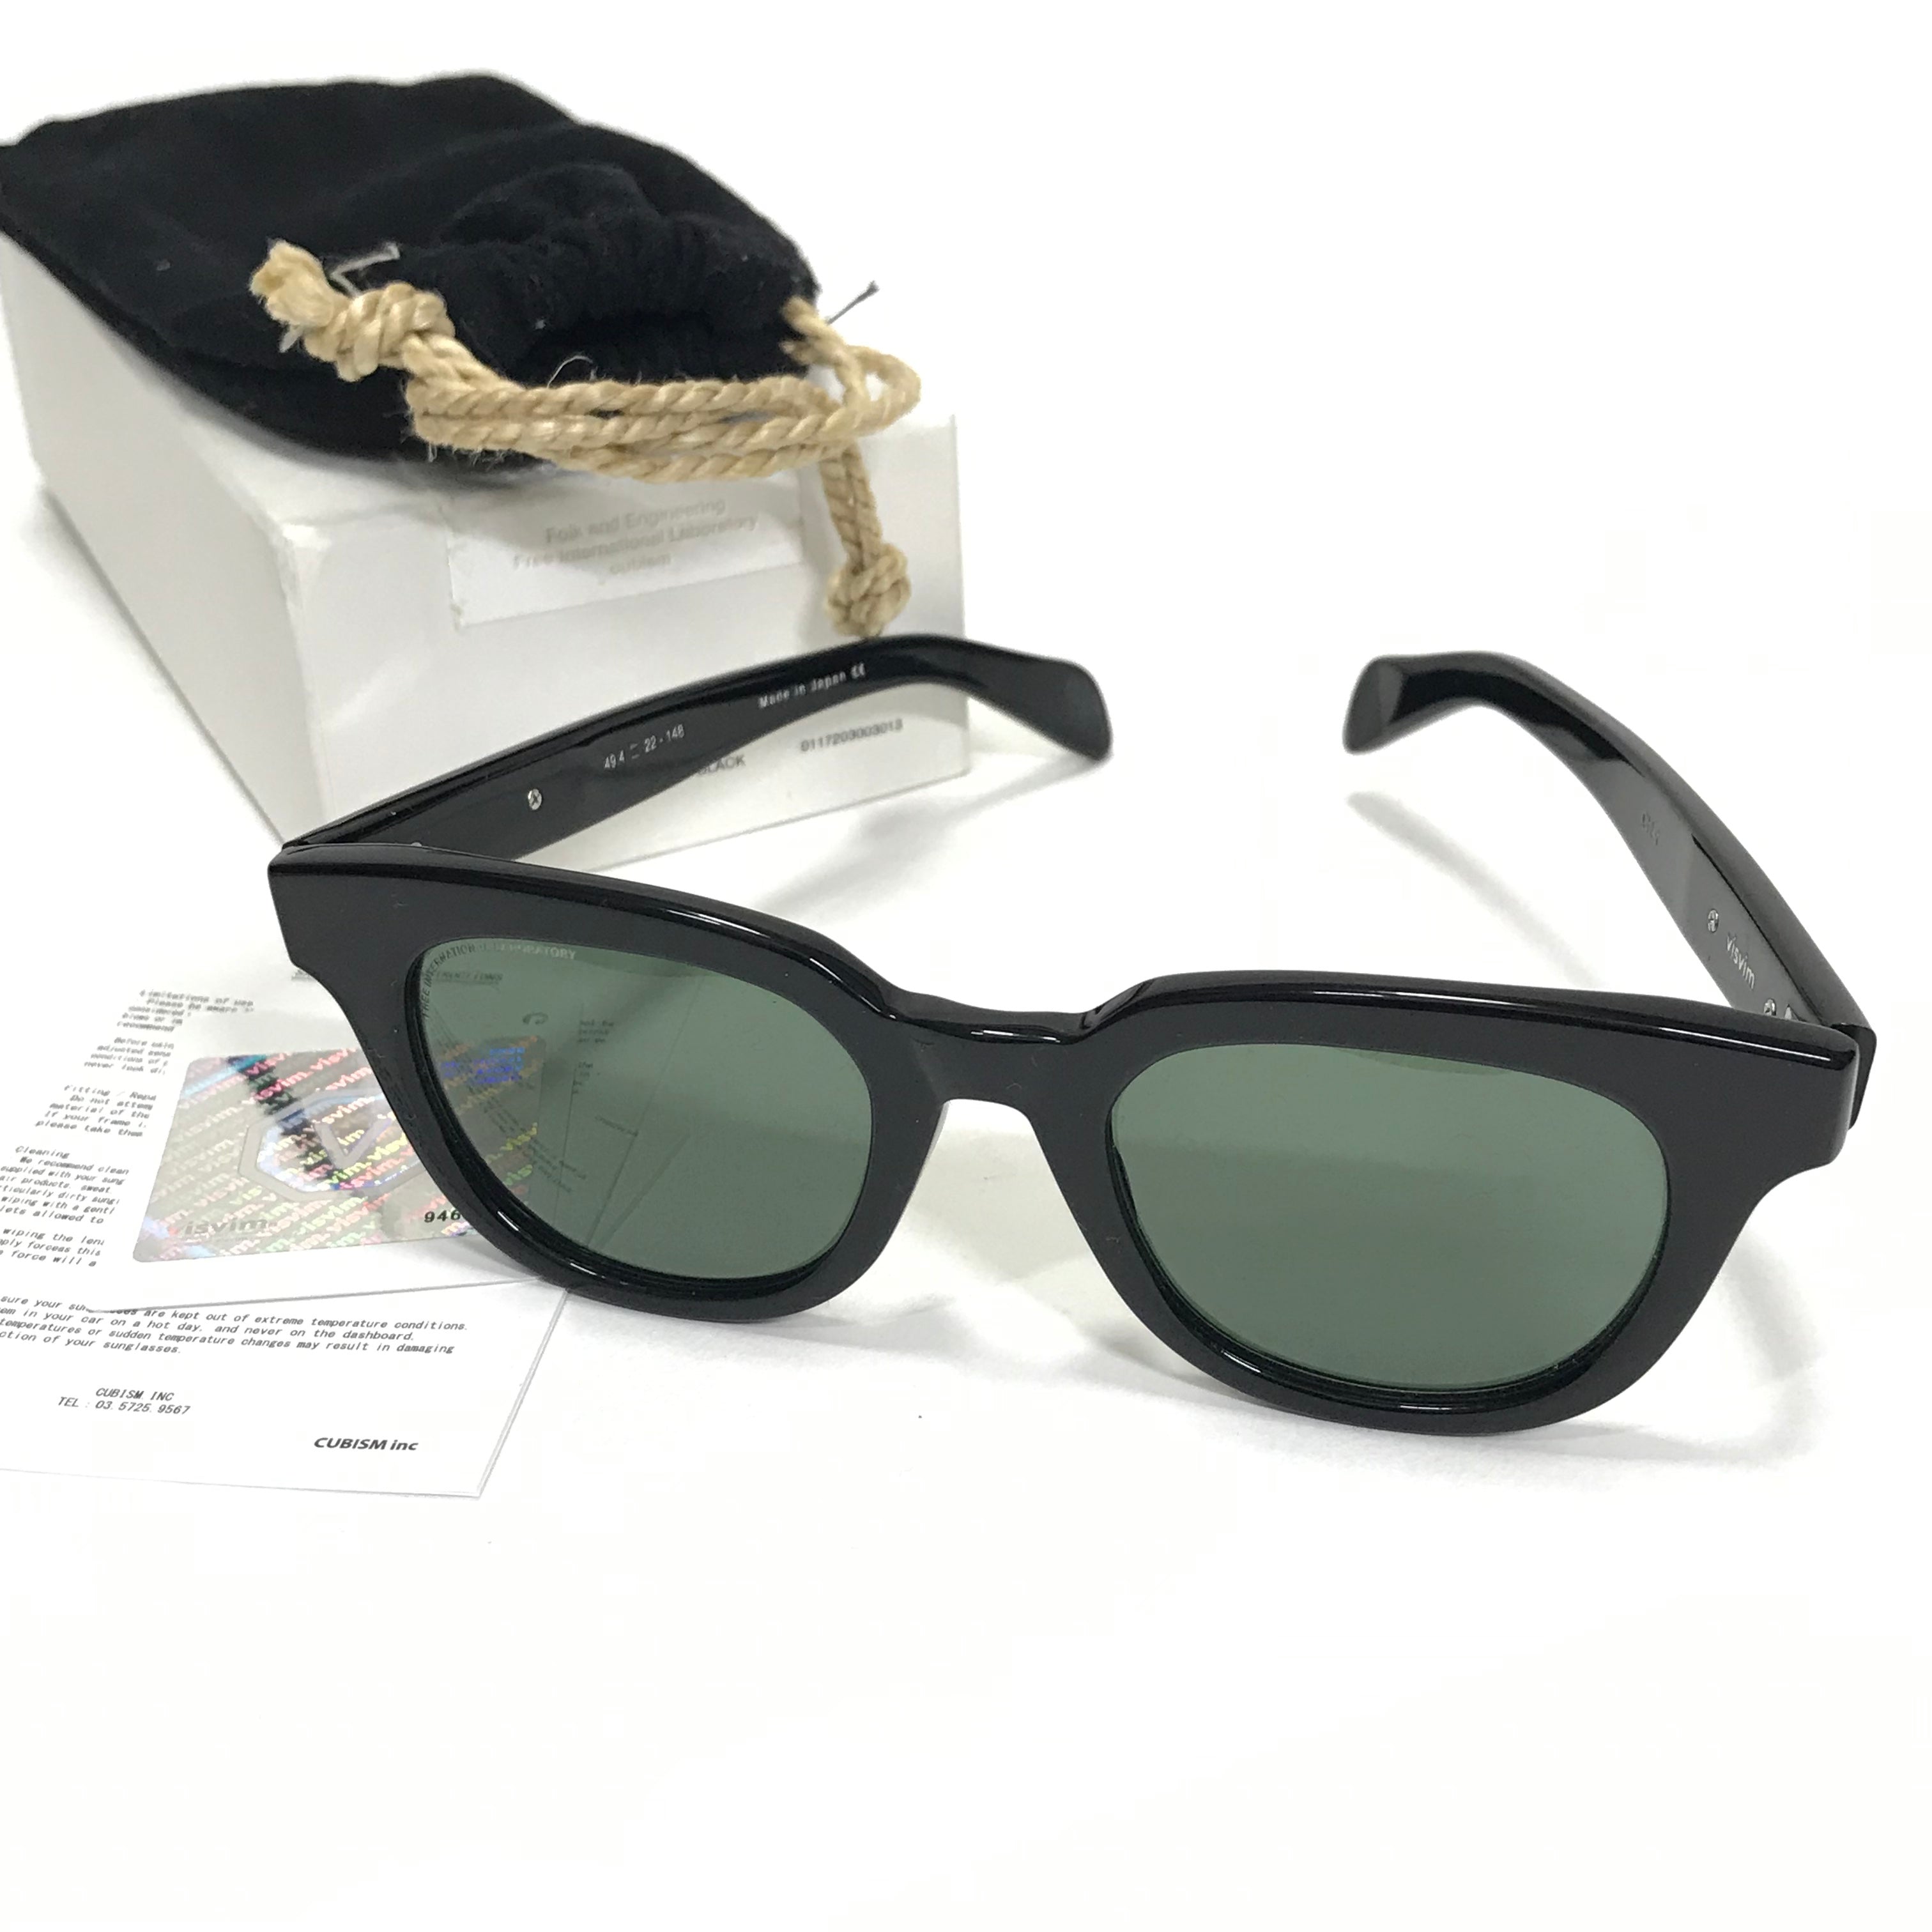 Visvim Viator Sunglasses Chief Black – StylisticsJapan.com